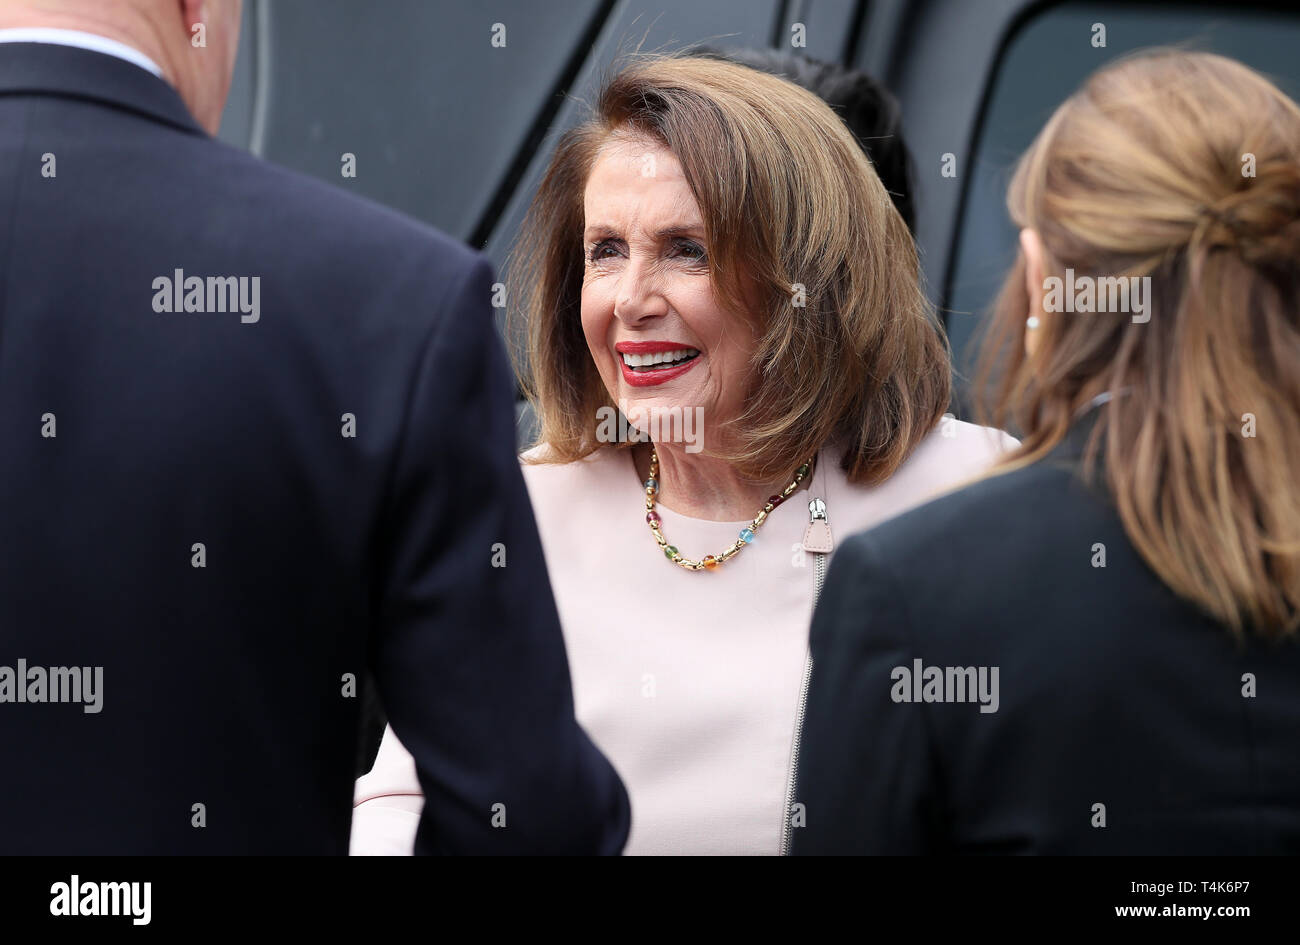 US-Repräsentantenhaus Sprecher Nancy Pelosi in Leinster House in Dublin anreisen, eine Adresse als Teil ihres 4-tägigen Besuch in Irland und Nordirland zu liefern. Stockfoto